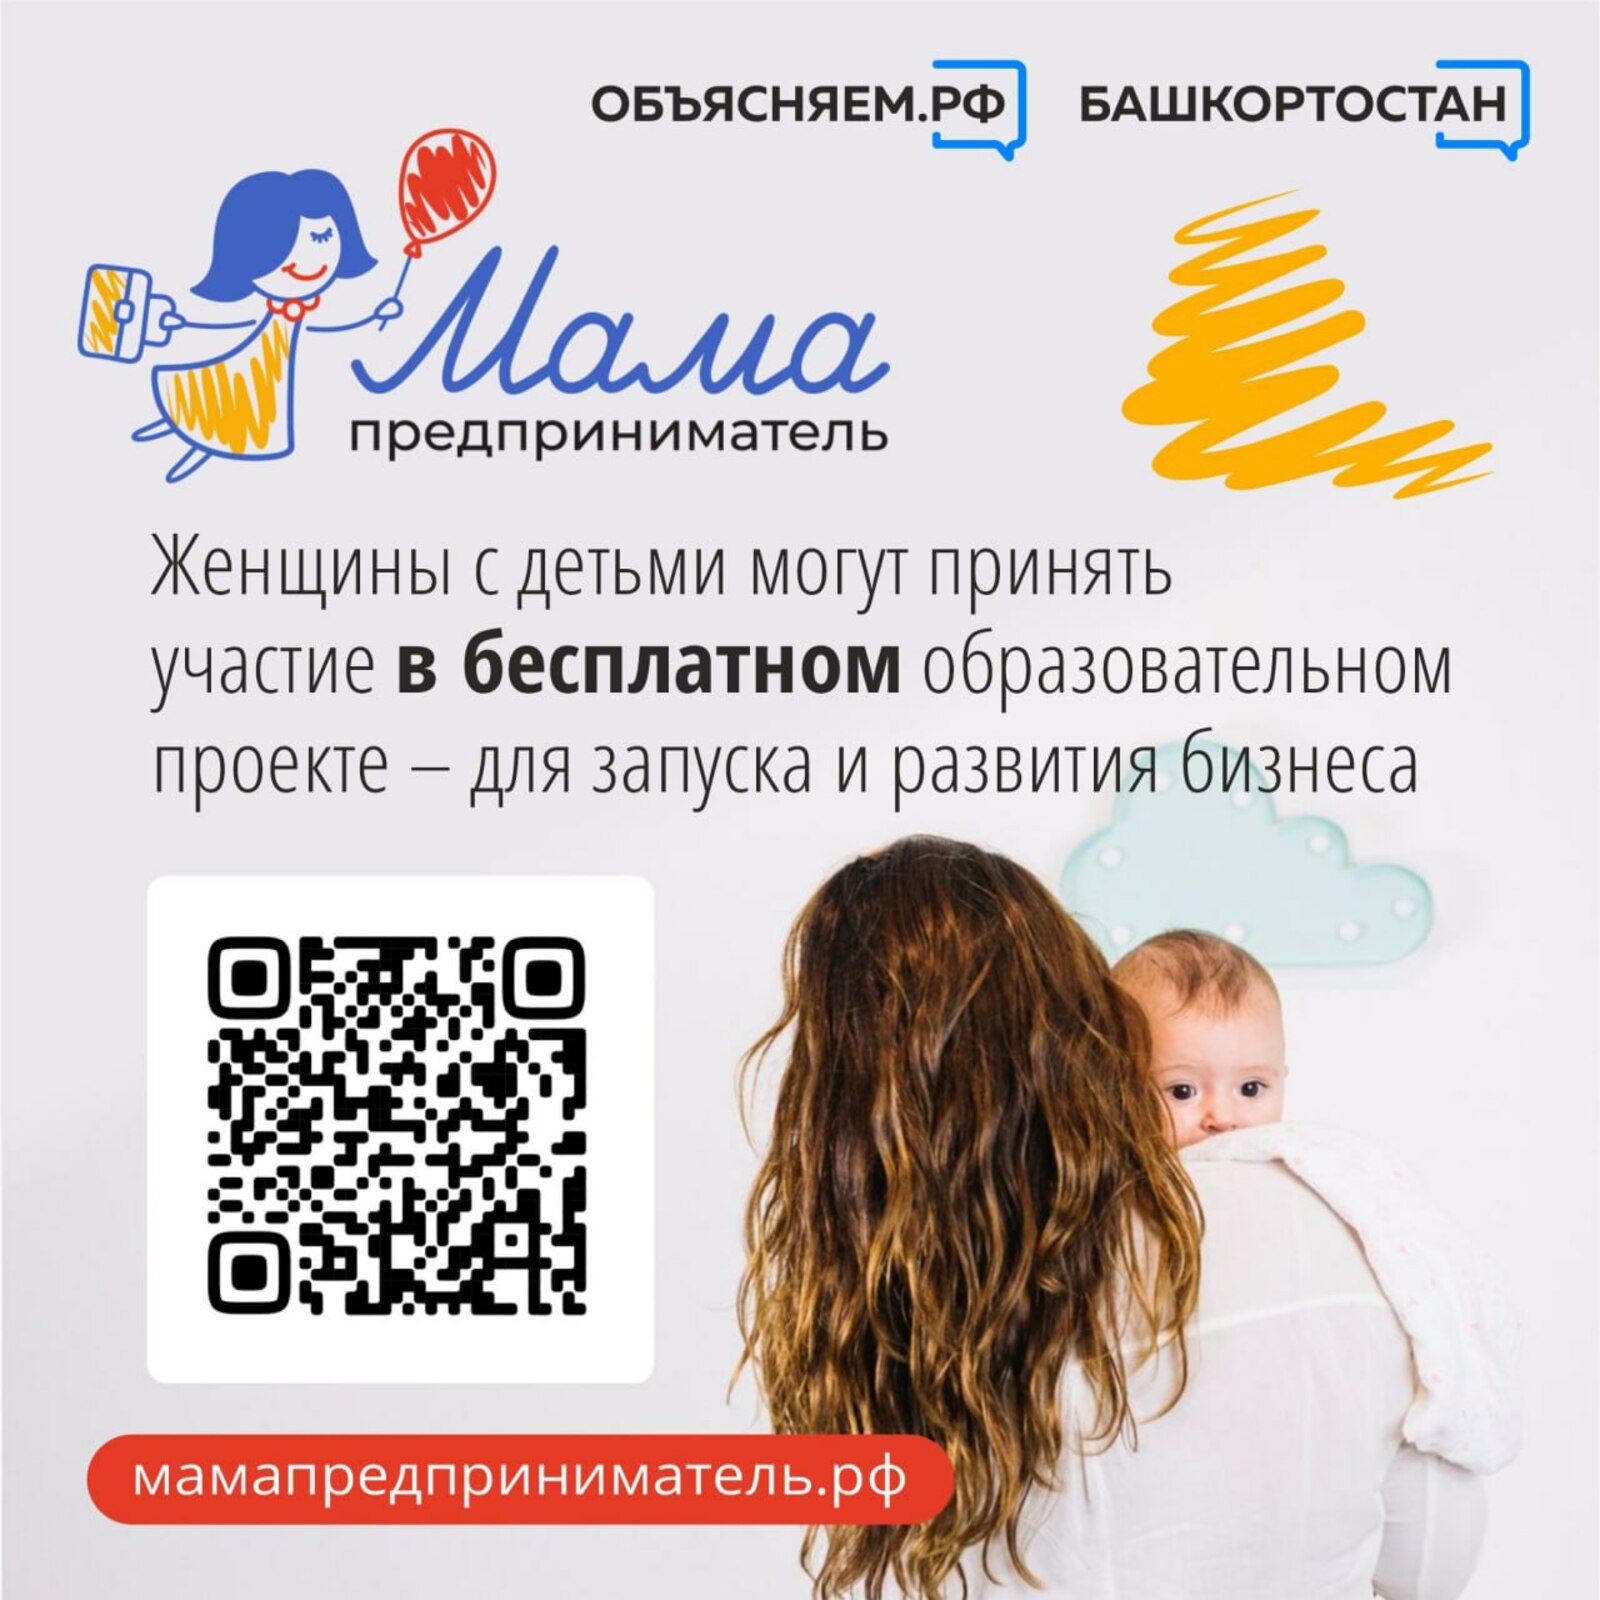 В Башкирии женщины с детьми могут участвовать в бесплатном образовательном проекте «Мама-предприниматель»